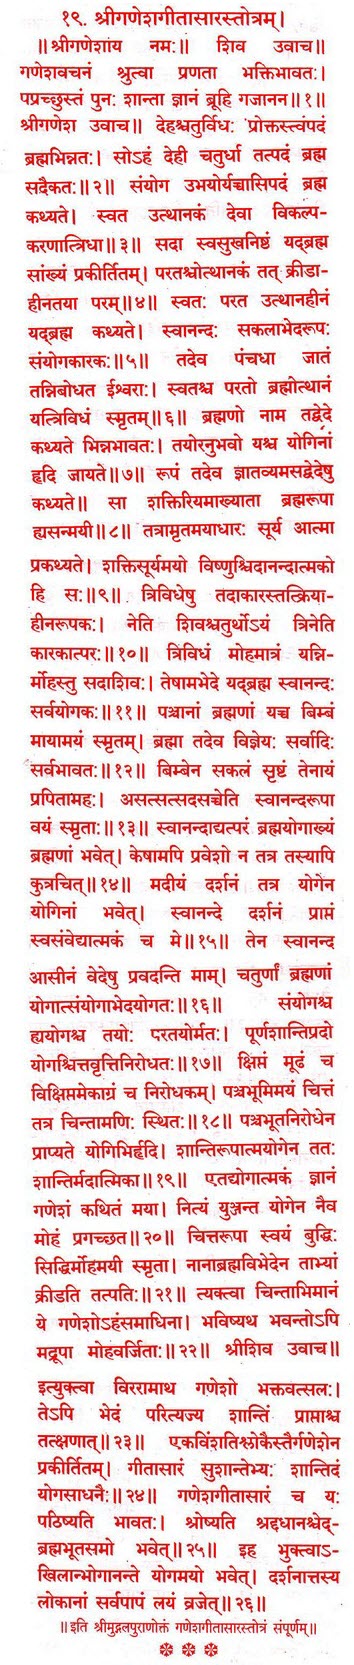 019 - Mugadal Puran Ganesh Geetasar Stotram